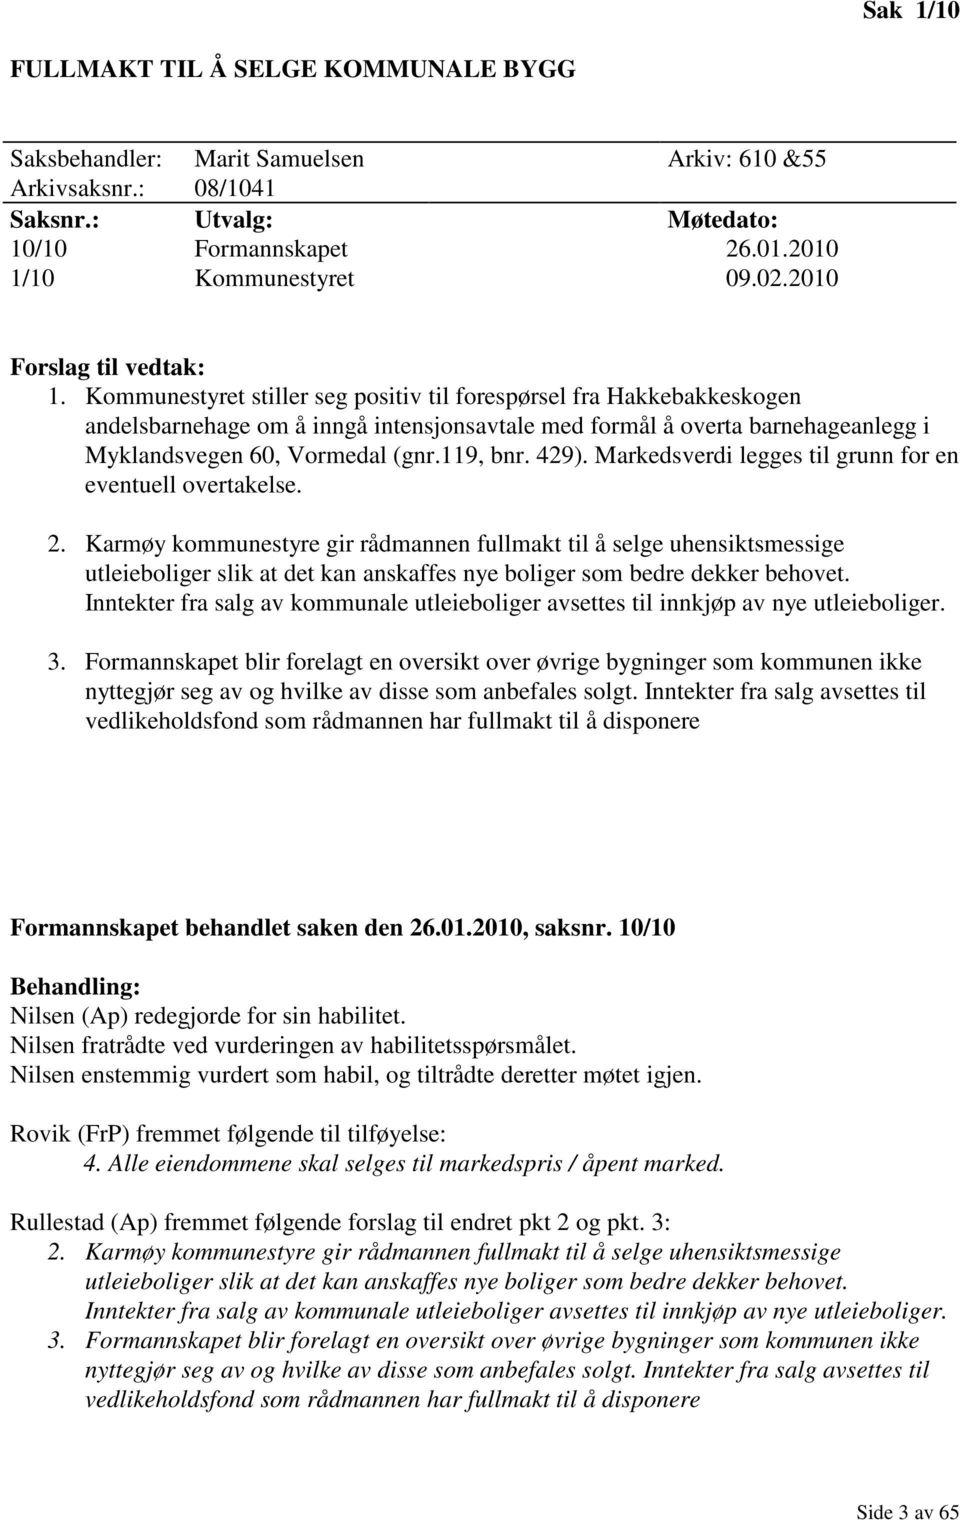 Kommunestyret stiller seg positiv til forespørsel fra Hakkebakkeskogen andelsbarnehage om å inngå intensjonsavtale med formål å overta barnehageanlegg i Myklandsvegen 60, Vormedal (gnr.119, bnr. 429).